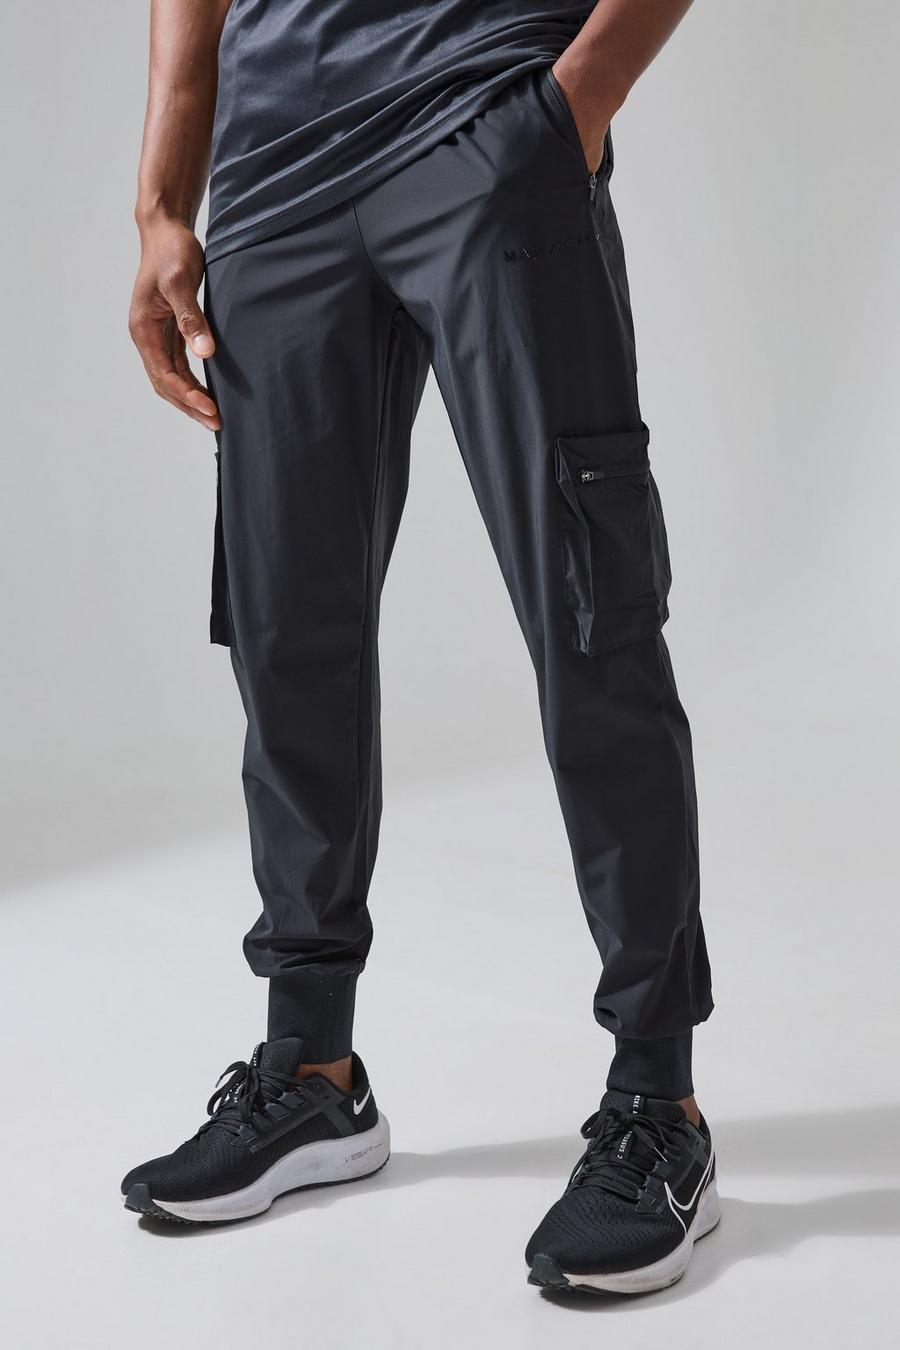 שחור מכנסי דגמ'ח לחדר הכושר עם אריגת ריב עמוקה וכיתוב Man Active